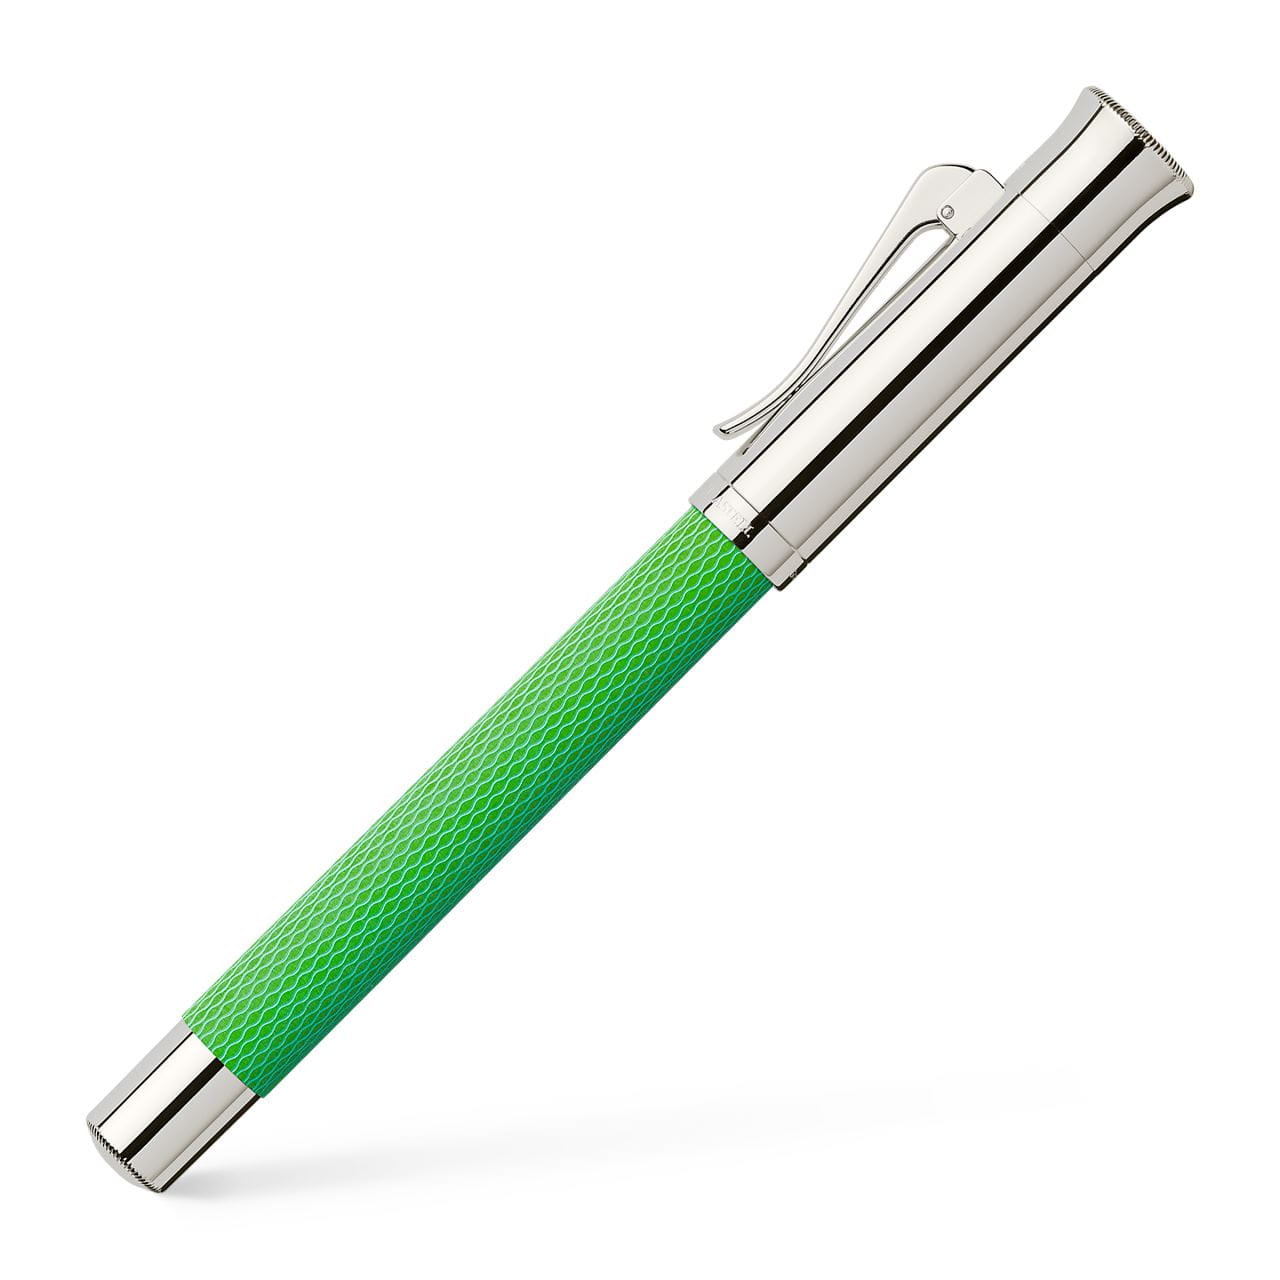 Graf-von-Faber-Castell - Fountain pen Guilloche Viper Green M